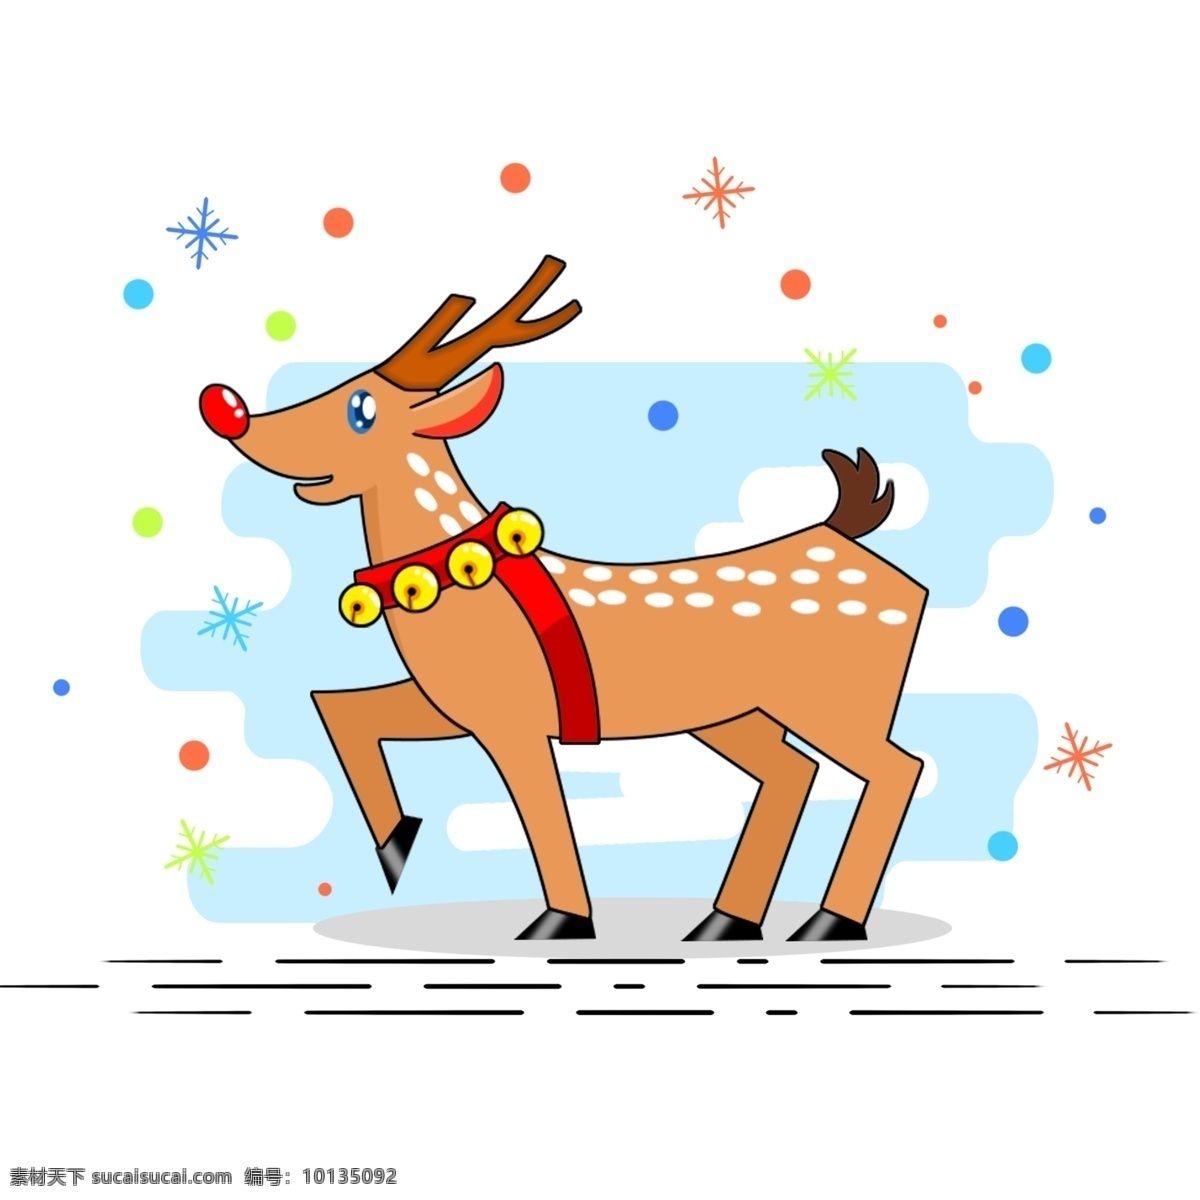 圣诞节 期间 圣诞 夜 平安夜 前夕 蛋糕 驯鹿 响铃 棕色 鹿